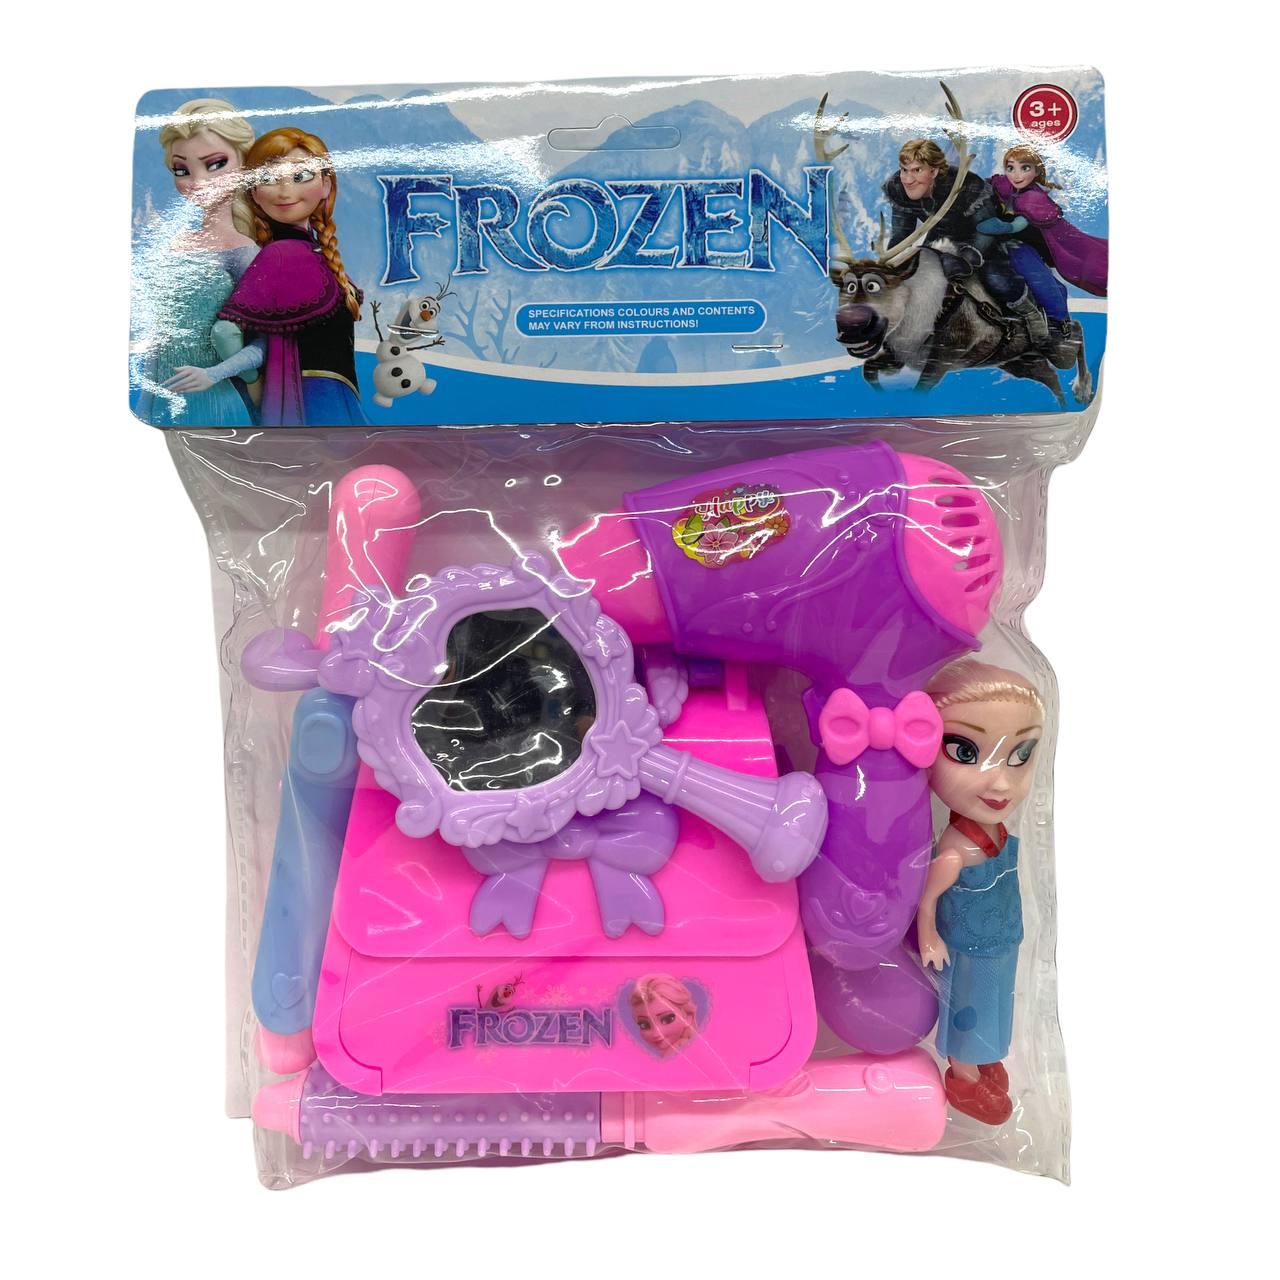 911 Frozen фен набор с сумочкой+ кукла в пакете, 8 предметов, 25*22см